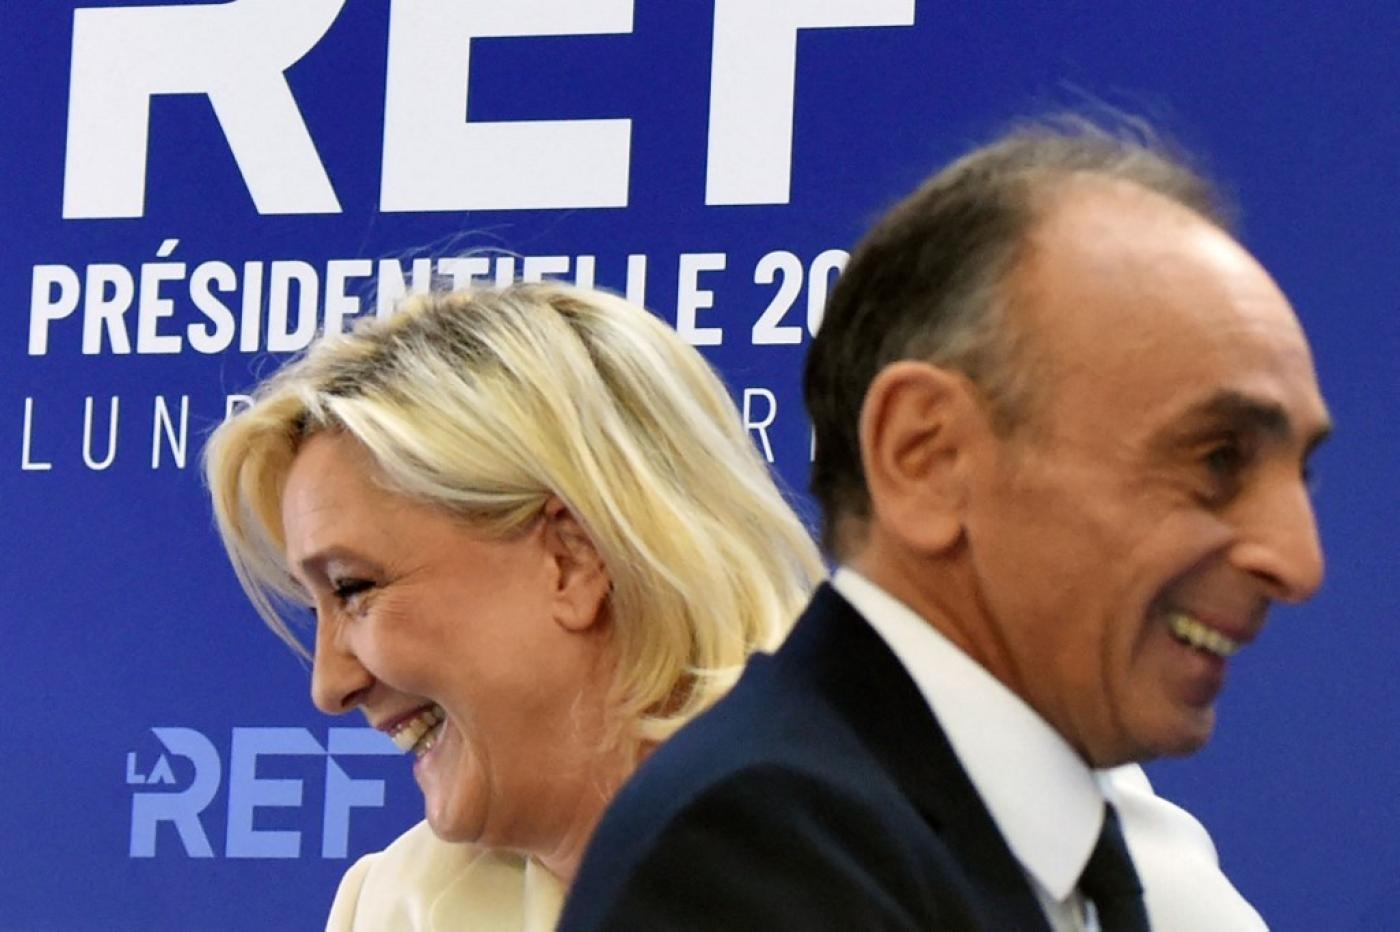 Éric Zemmour et Marine Le Pen, candidats à l’élection présidentielle, à Paris le 21 février 2022 (AFP)